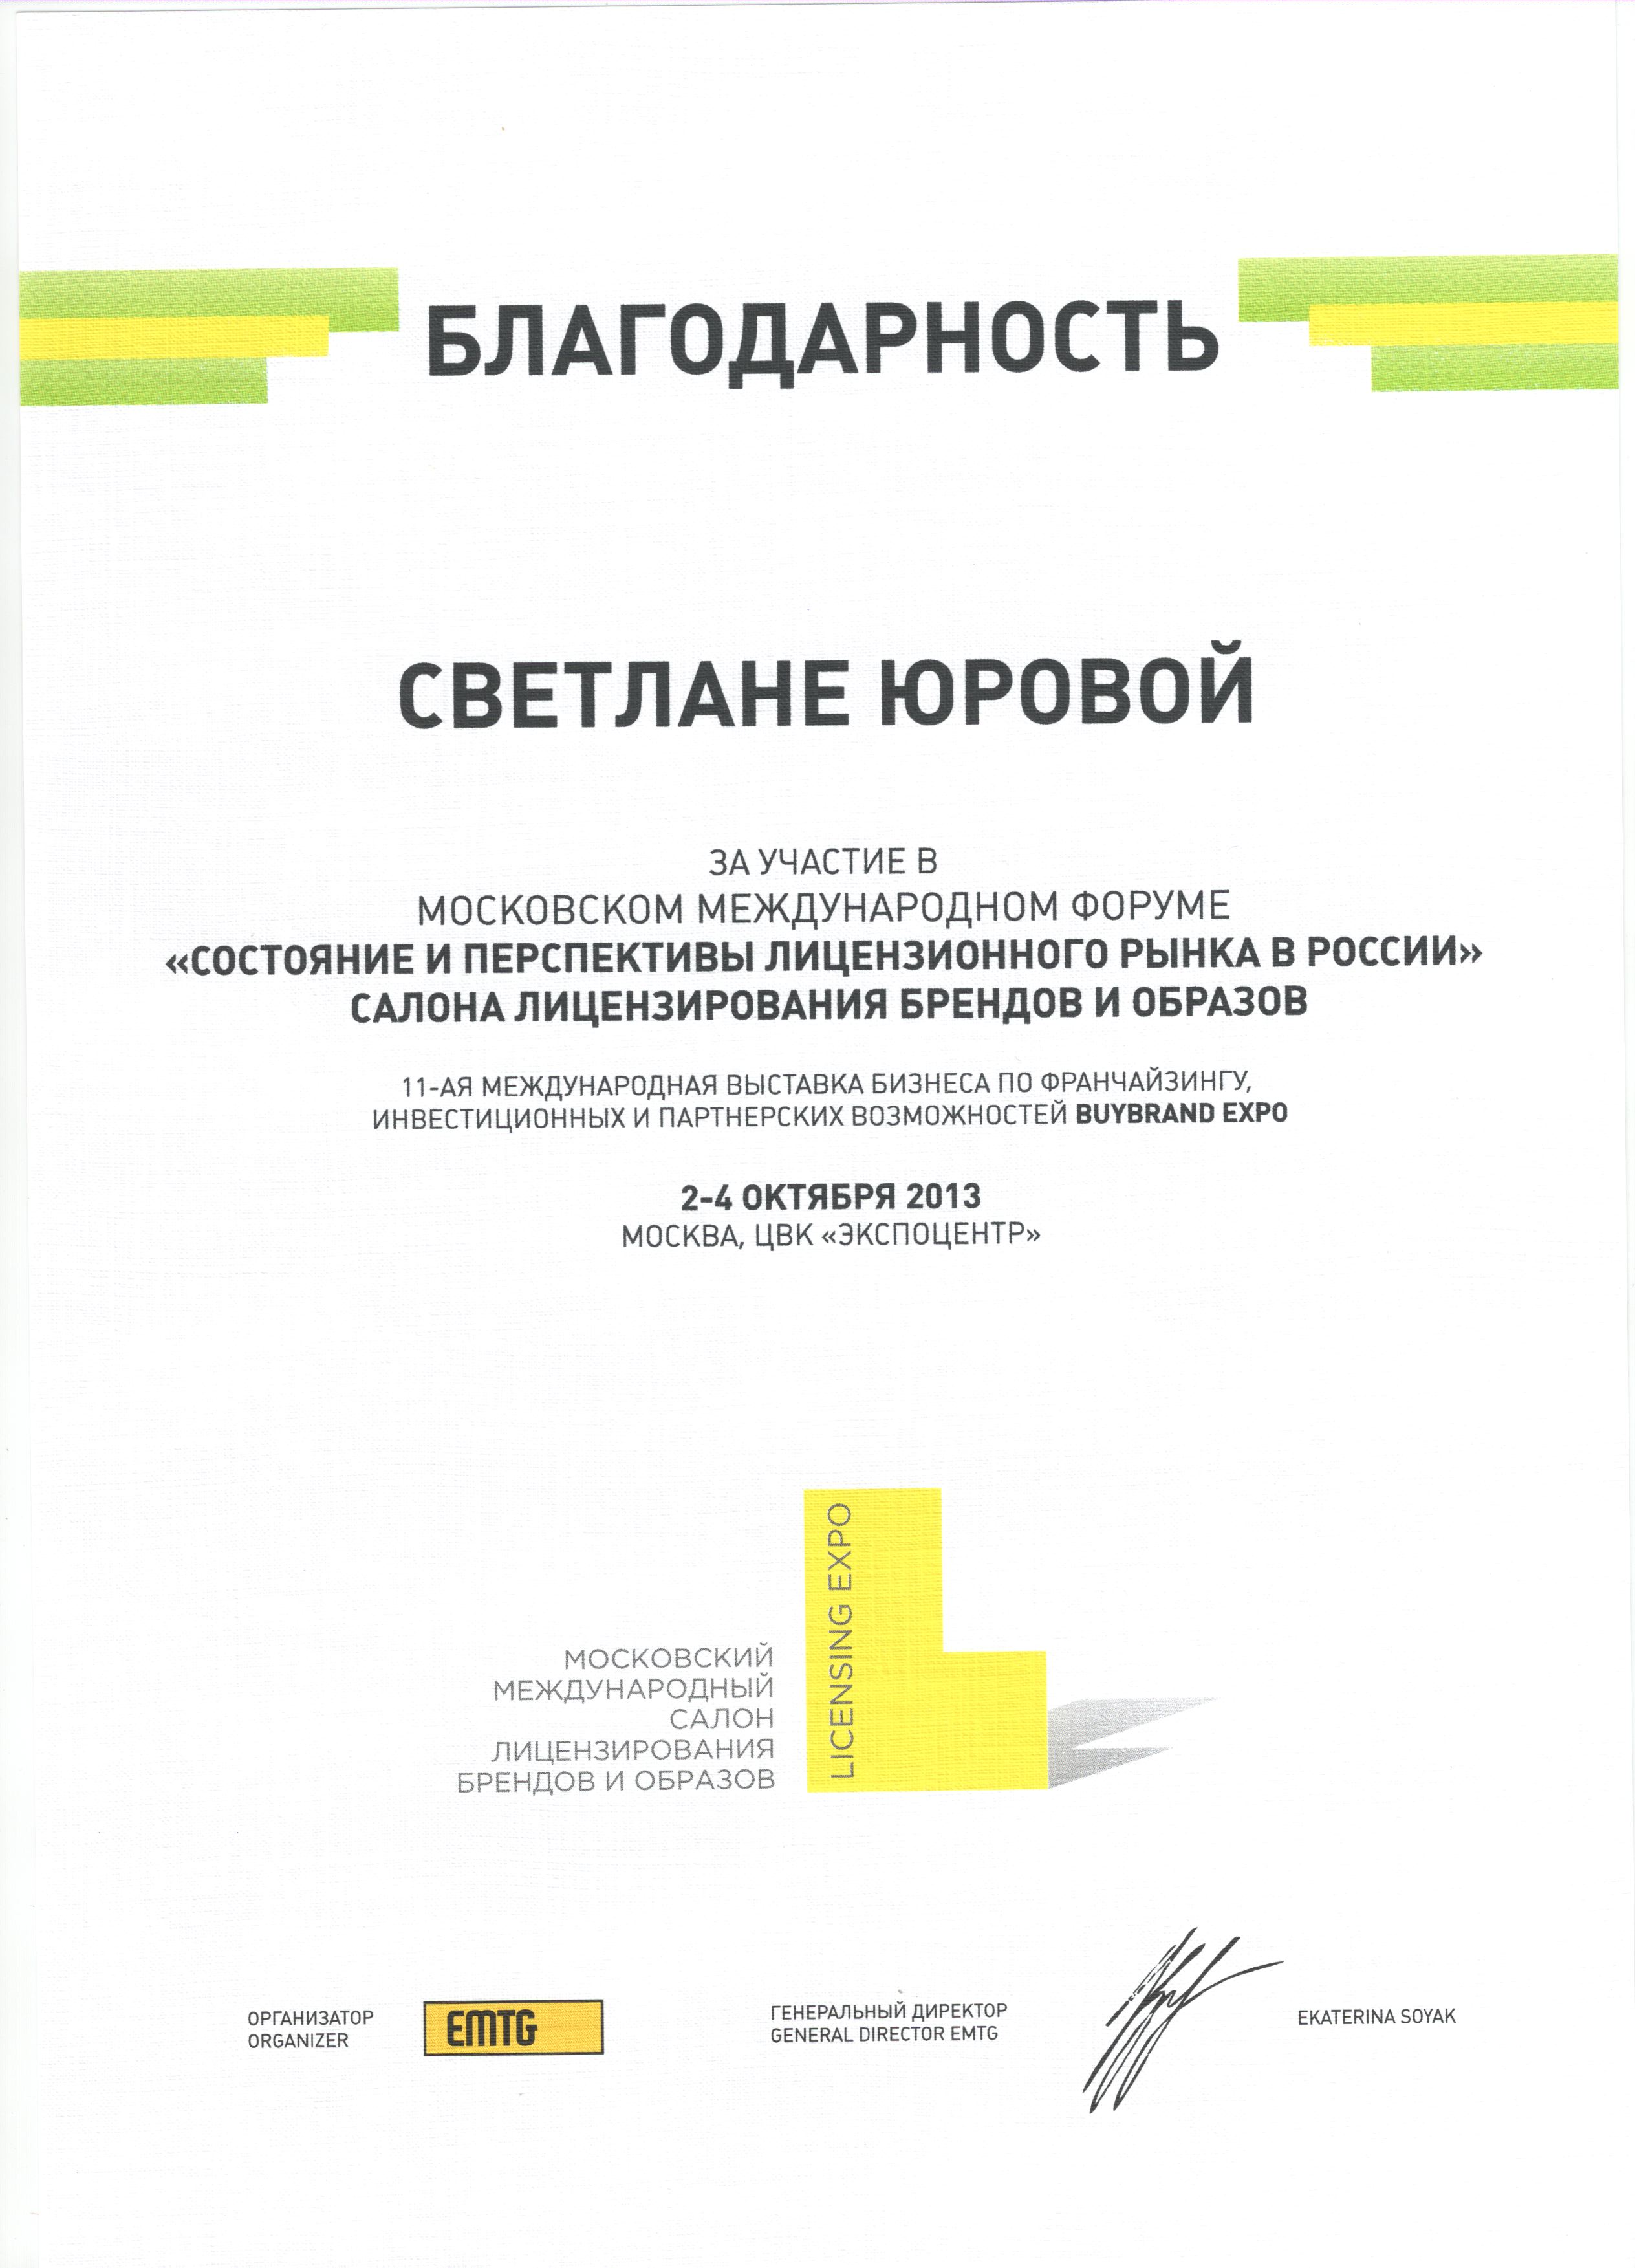 Московский международный салон лицензирования брендов и образов